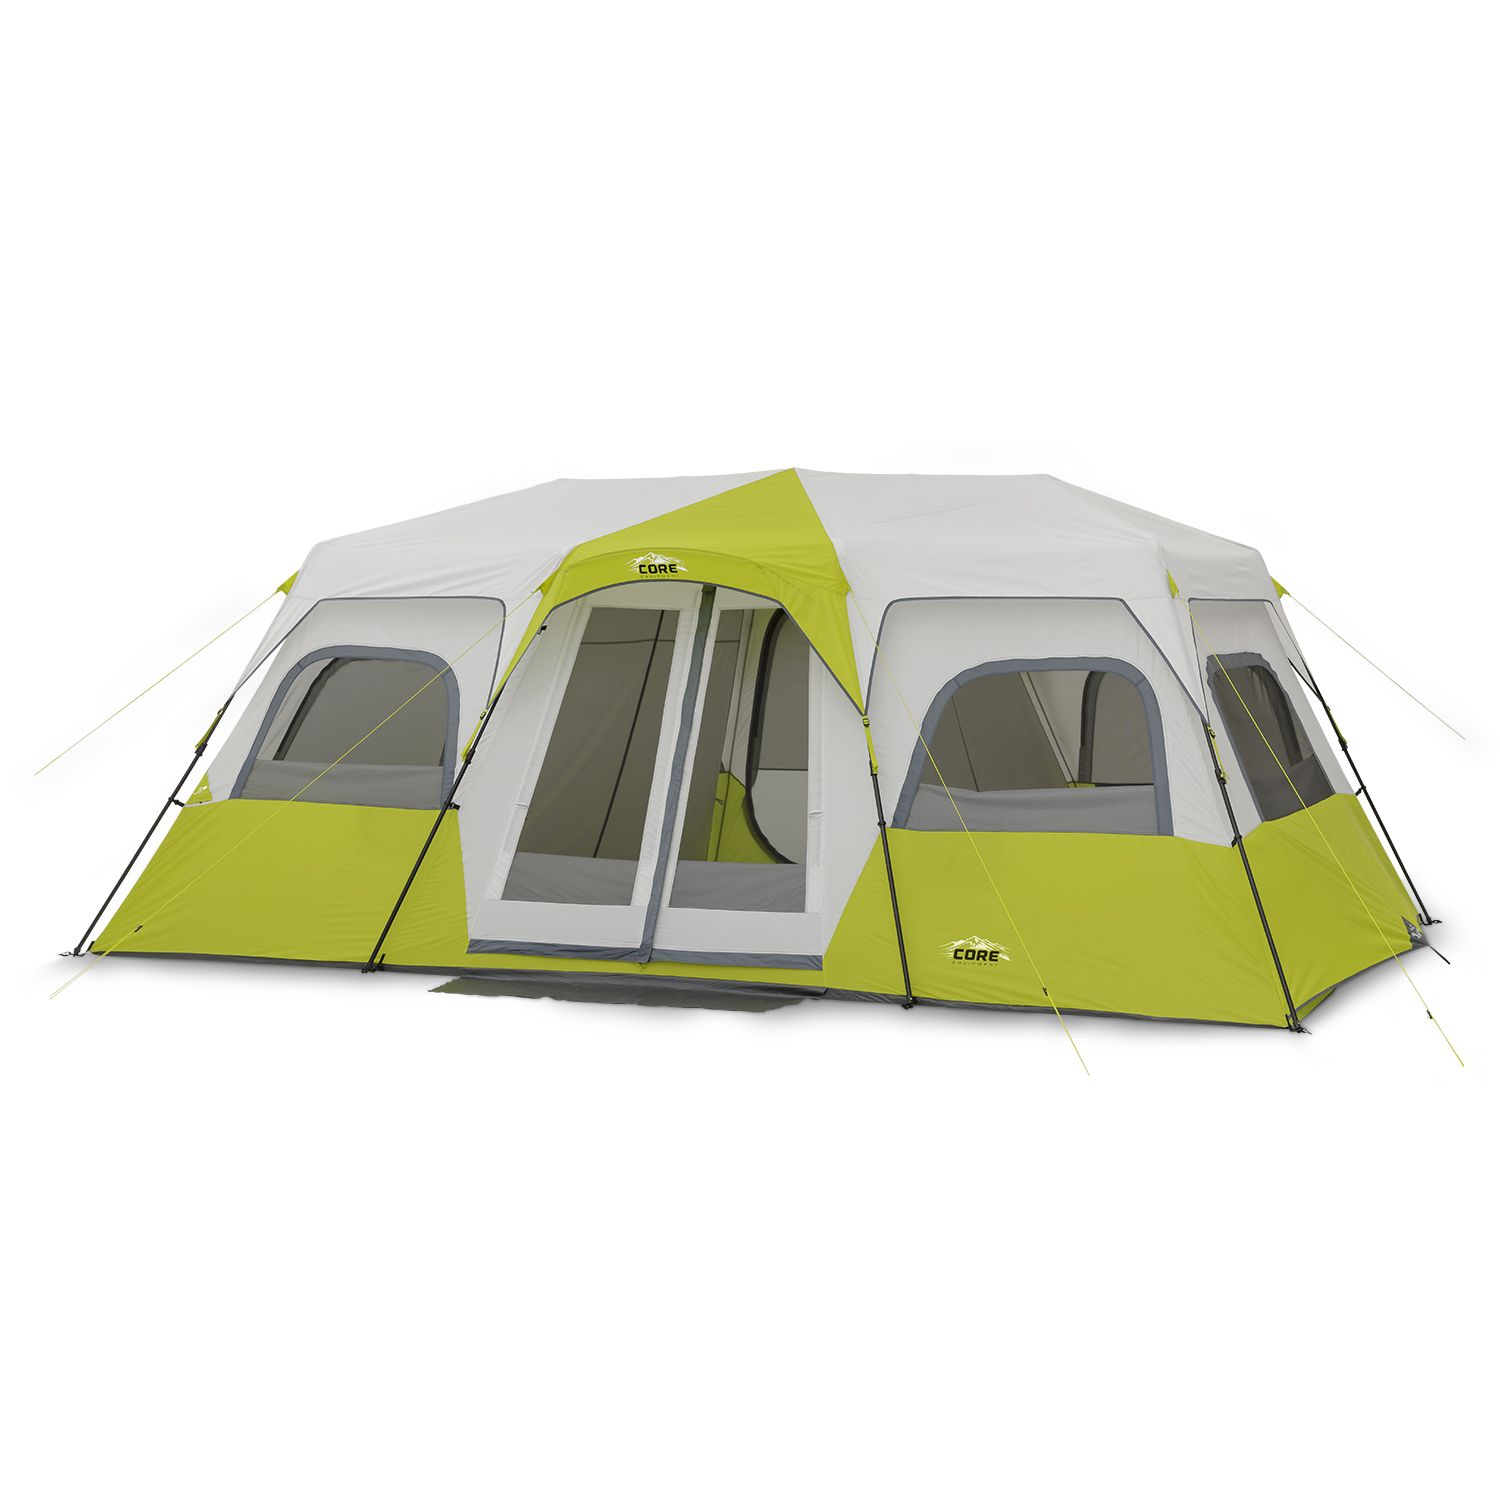 Costco CORE 4-Person Straight Wall Cabin Tent $79.99